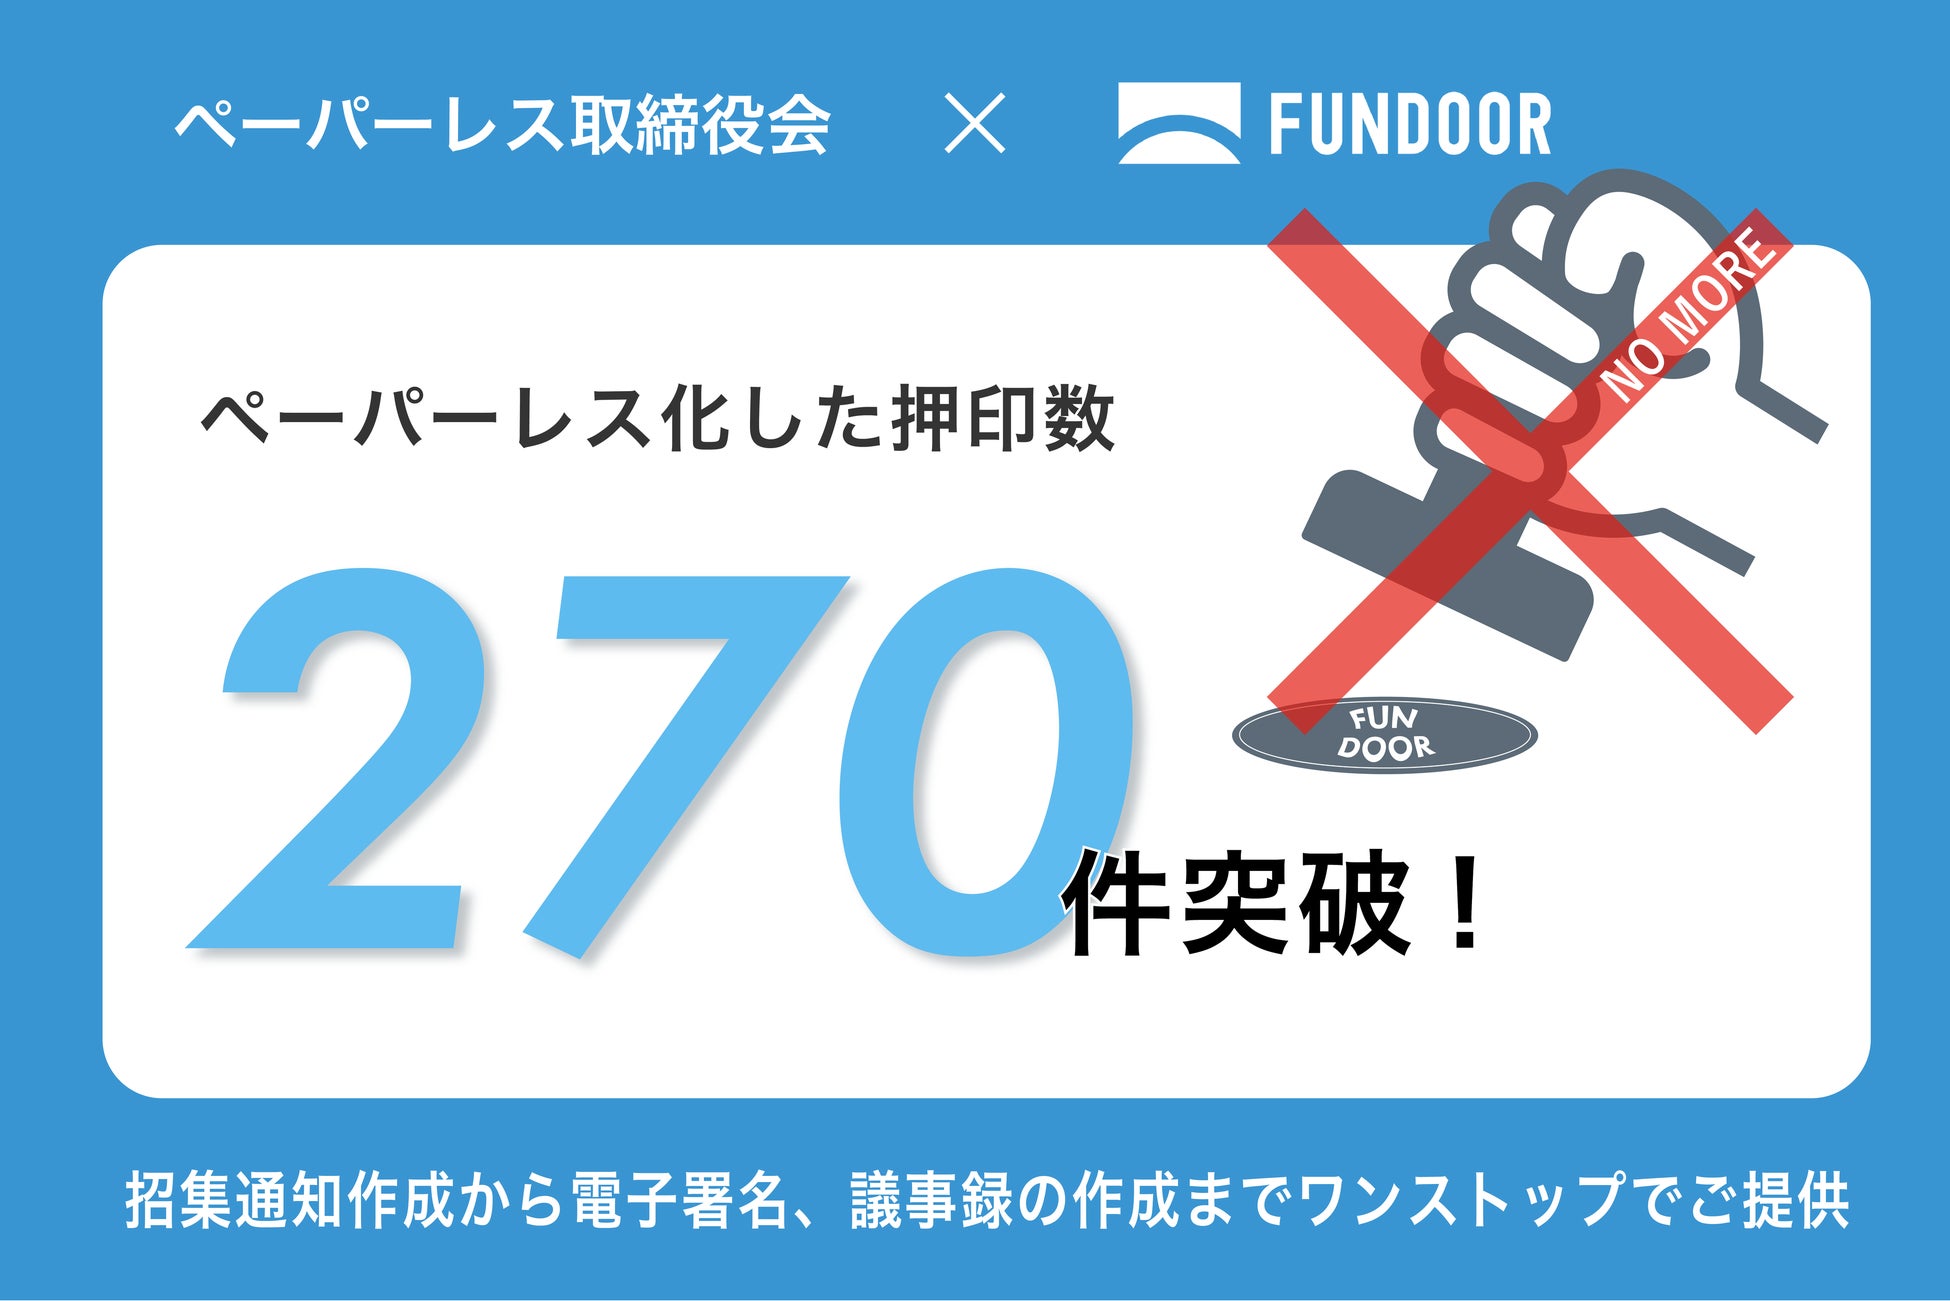 経営管理プラットフォーム「FUNDOOR」取締役会機能ペーパーレス化した押印数 270件突破